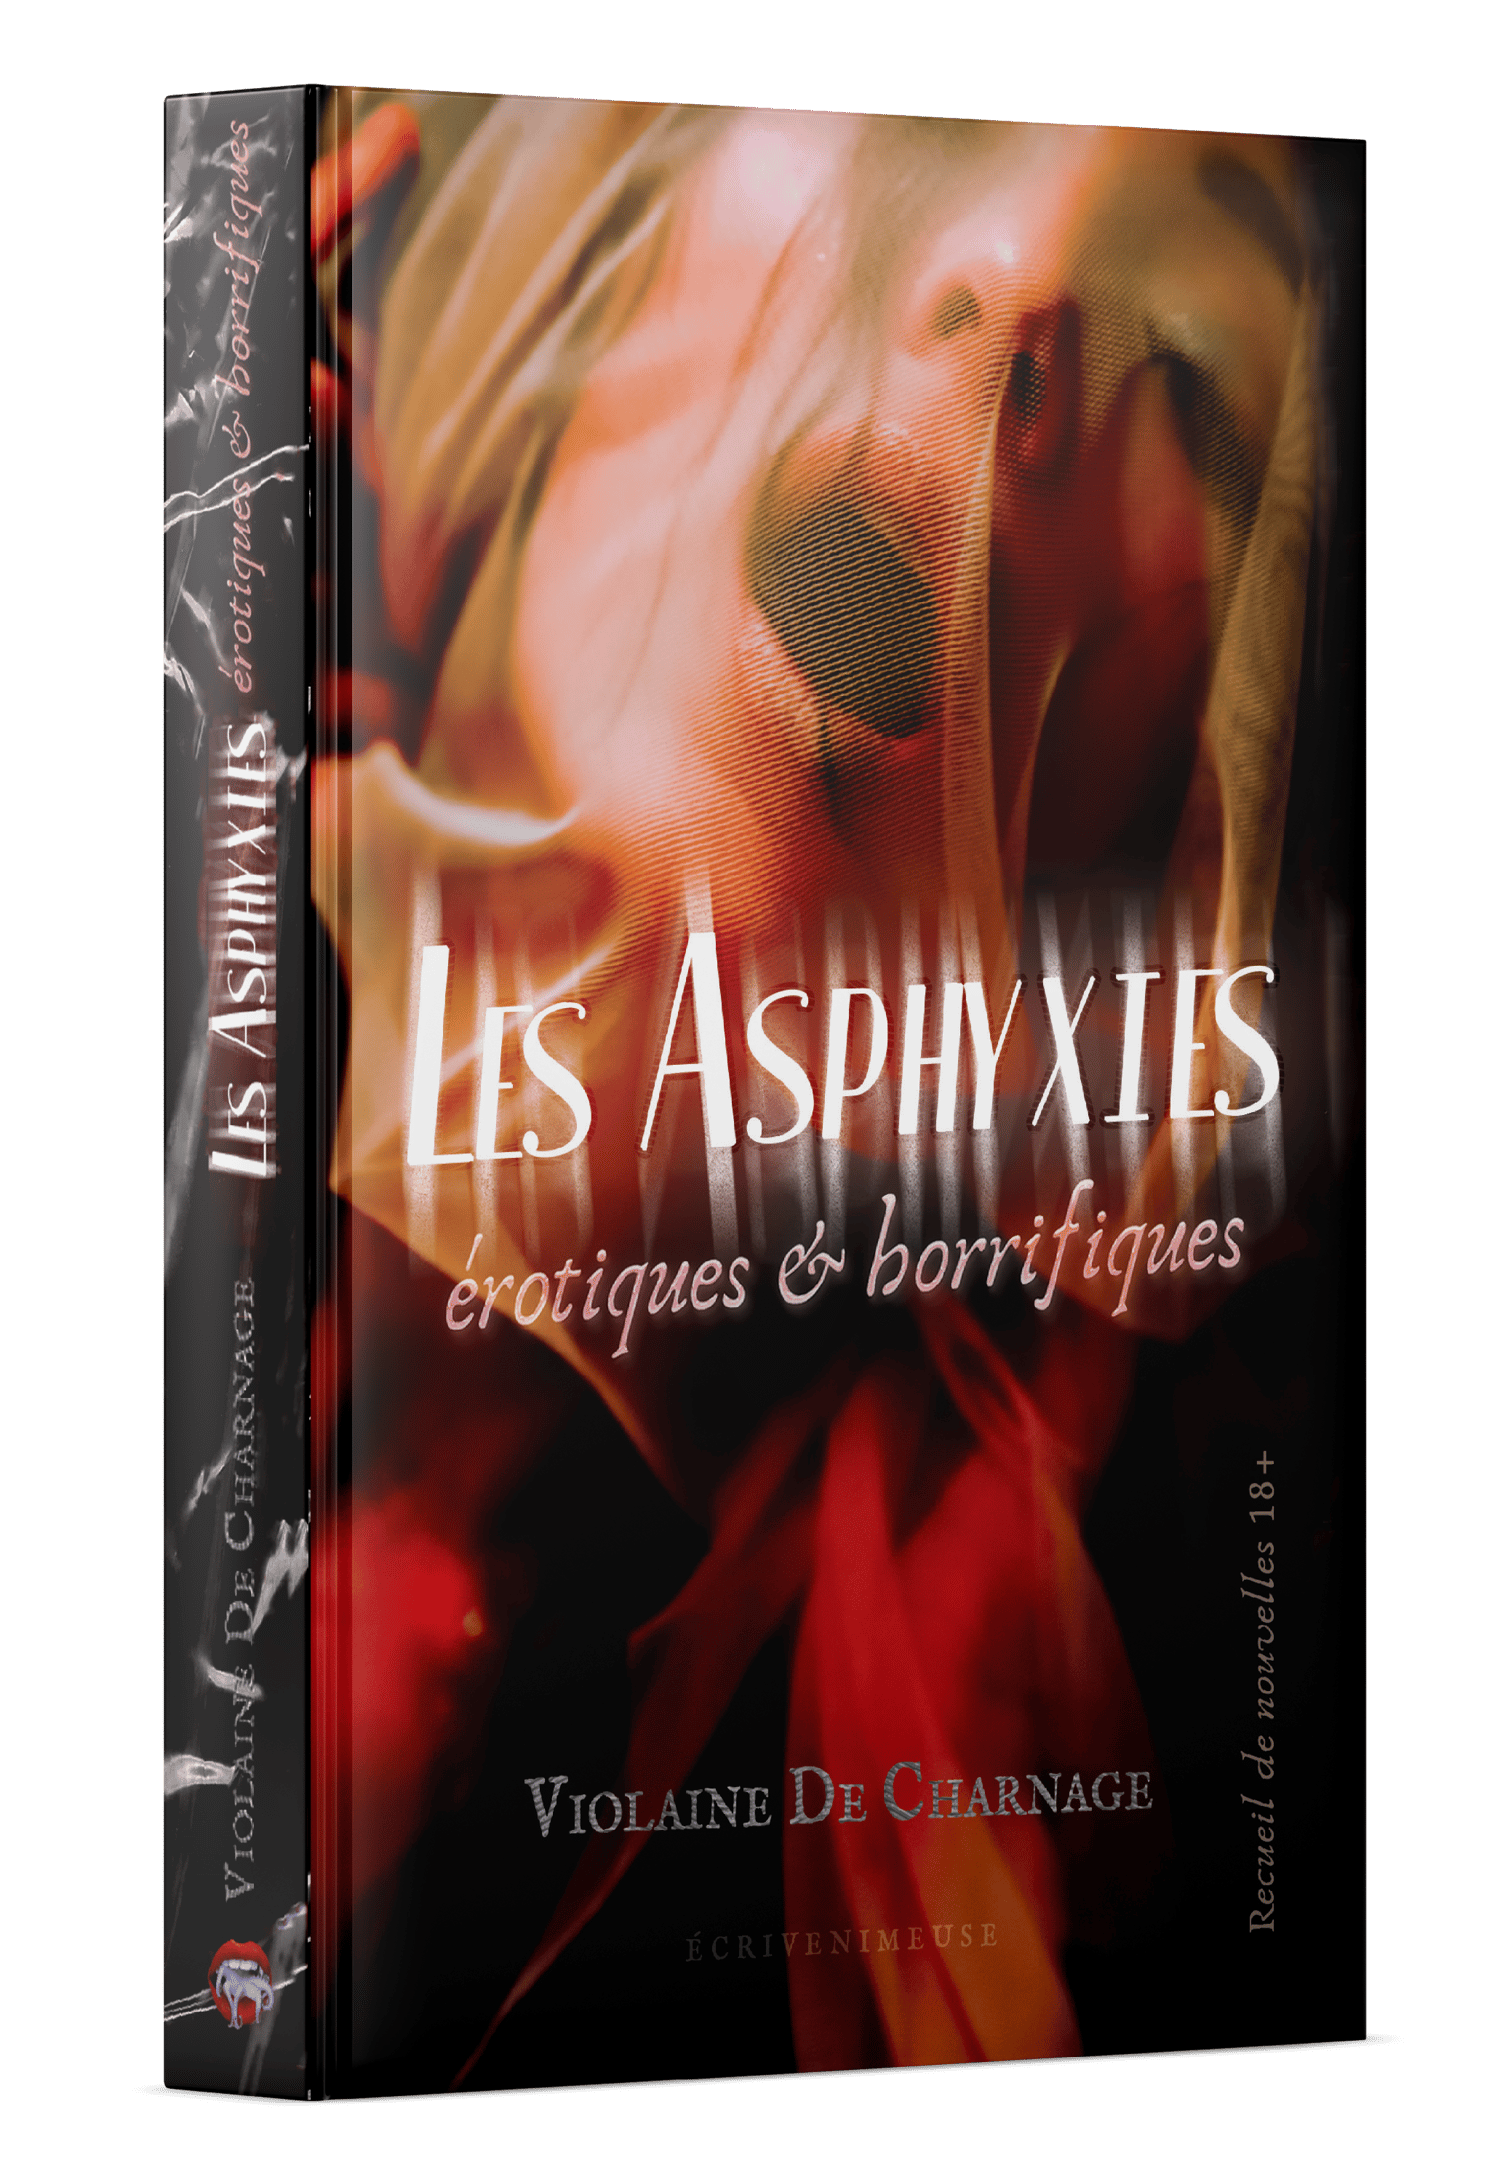 Image of LES ASPHYXIES Erotiques & Horrifiques (recueil)